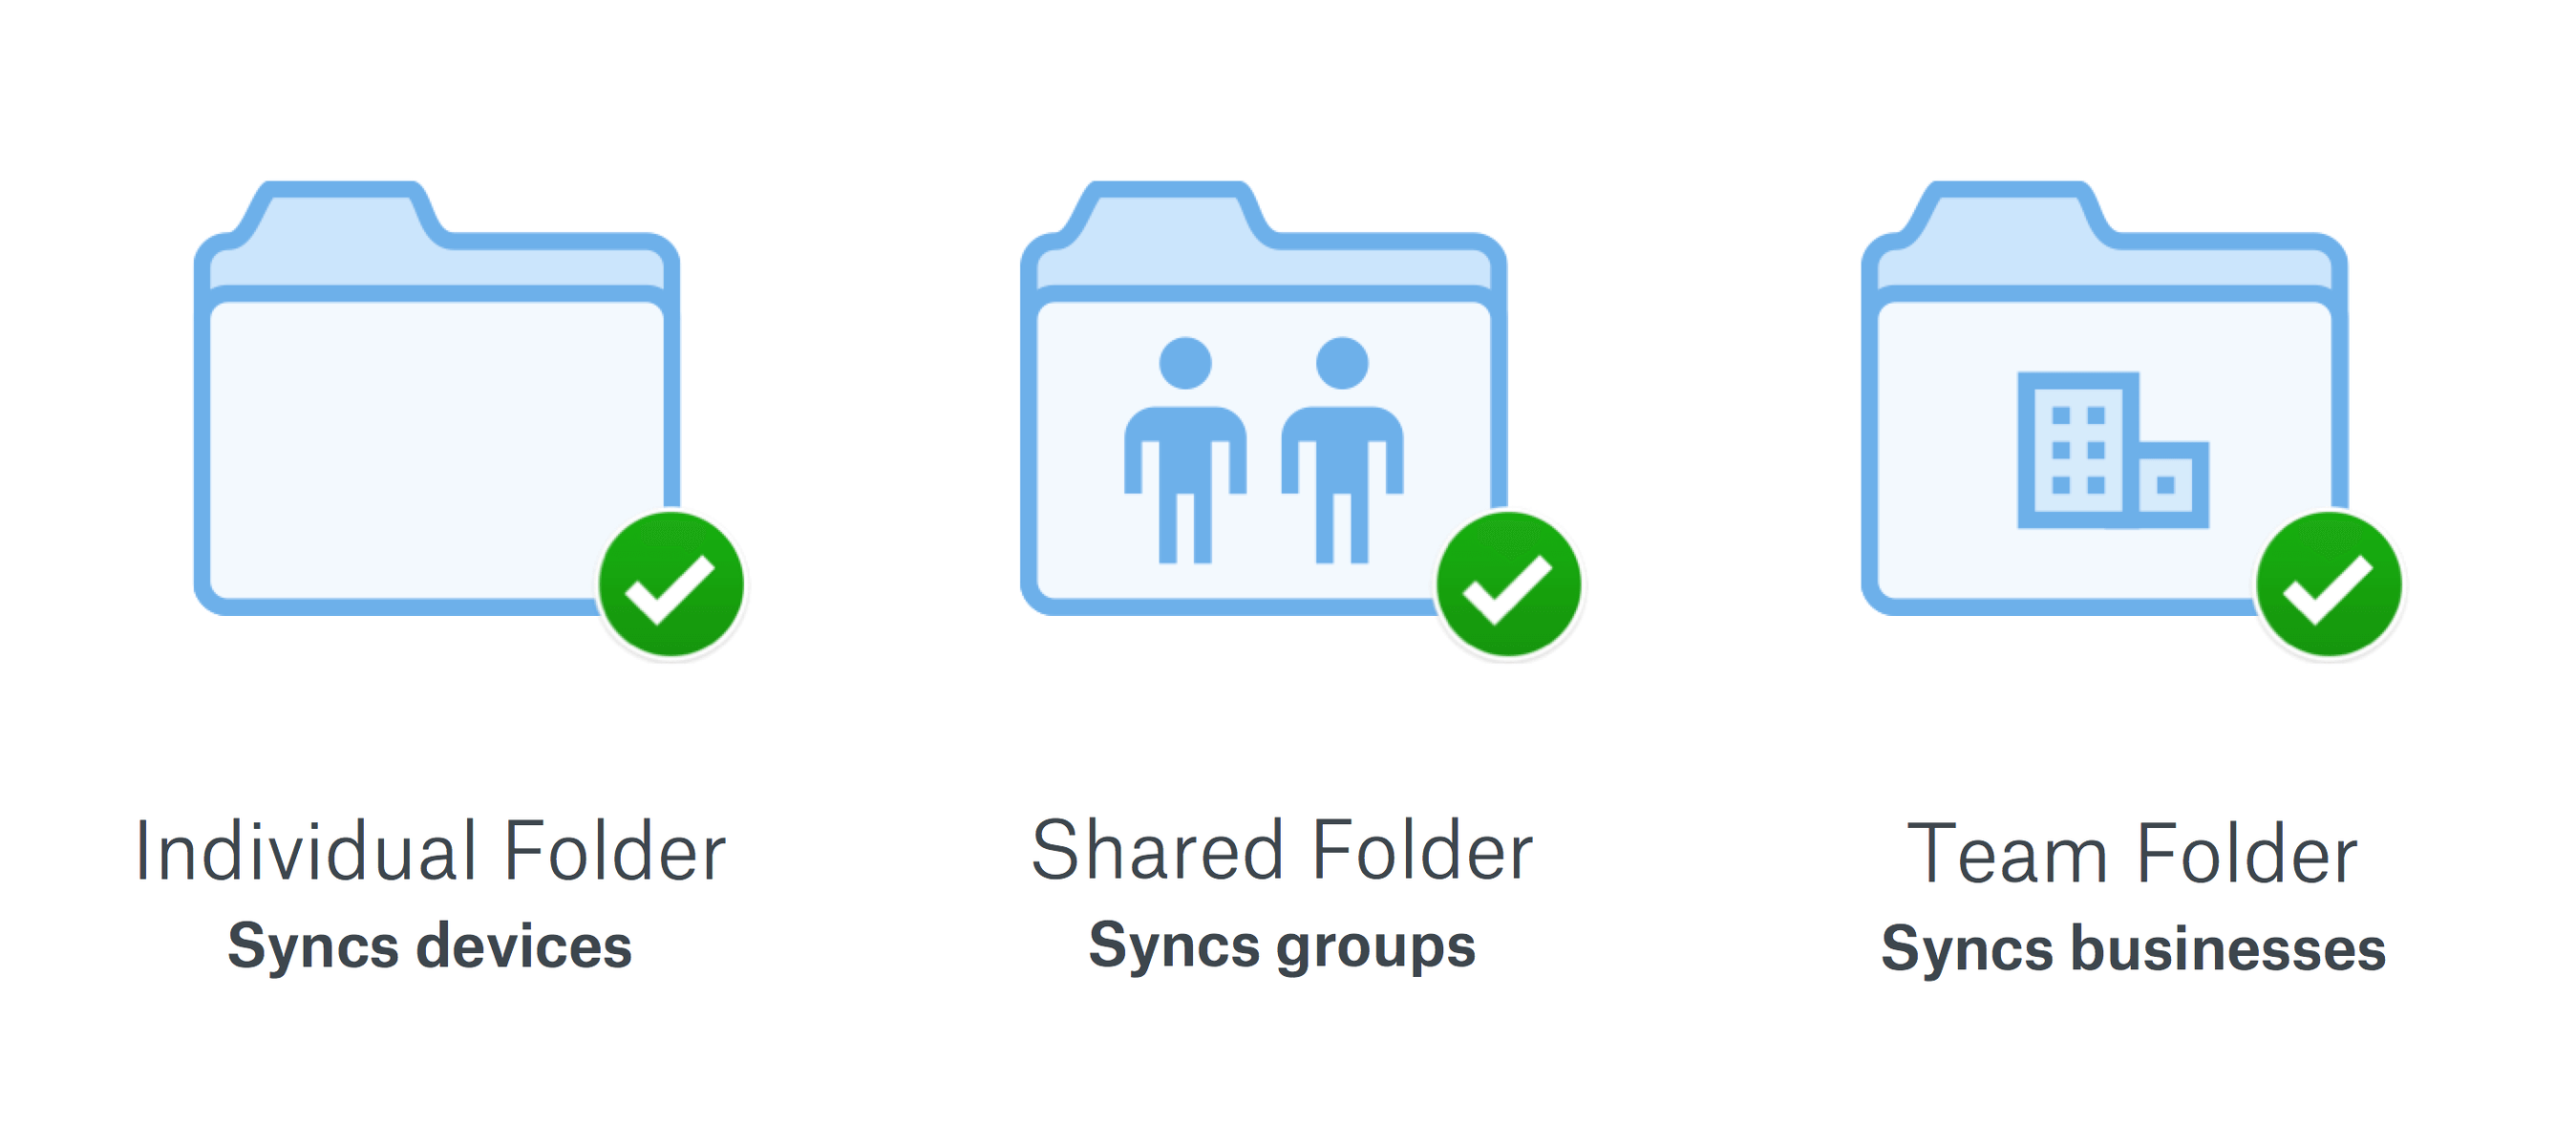 box shared folder sync